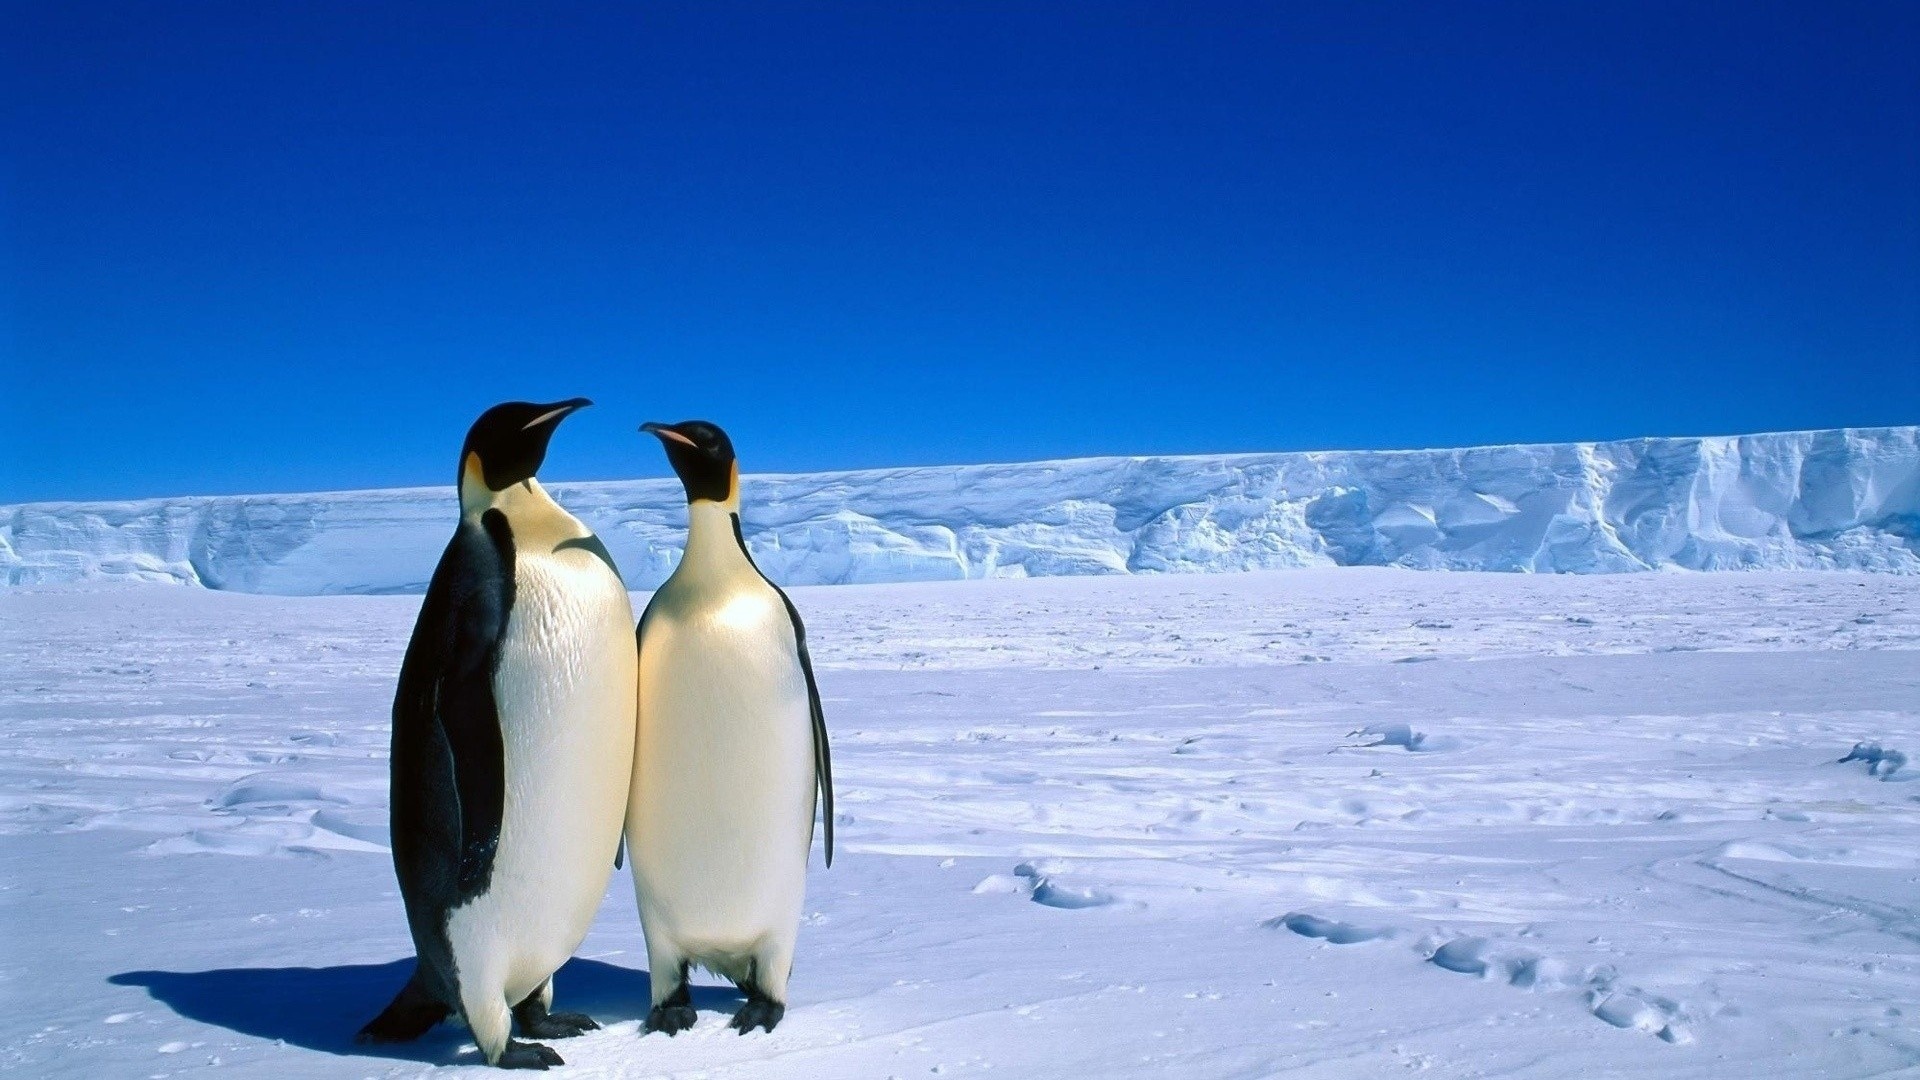 Penguin wallpaper, Antarctica wildlife, 1920x1080 Full HD Desktop